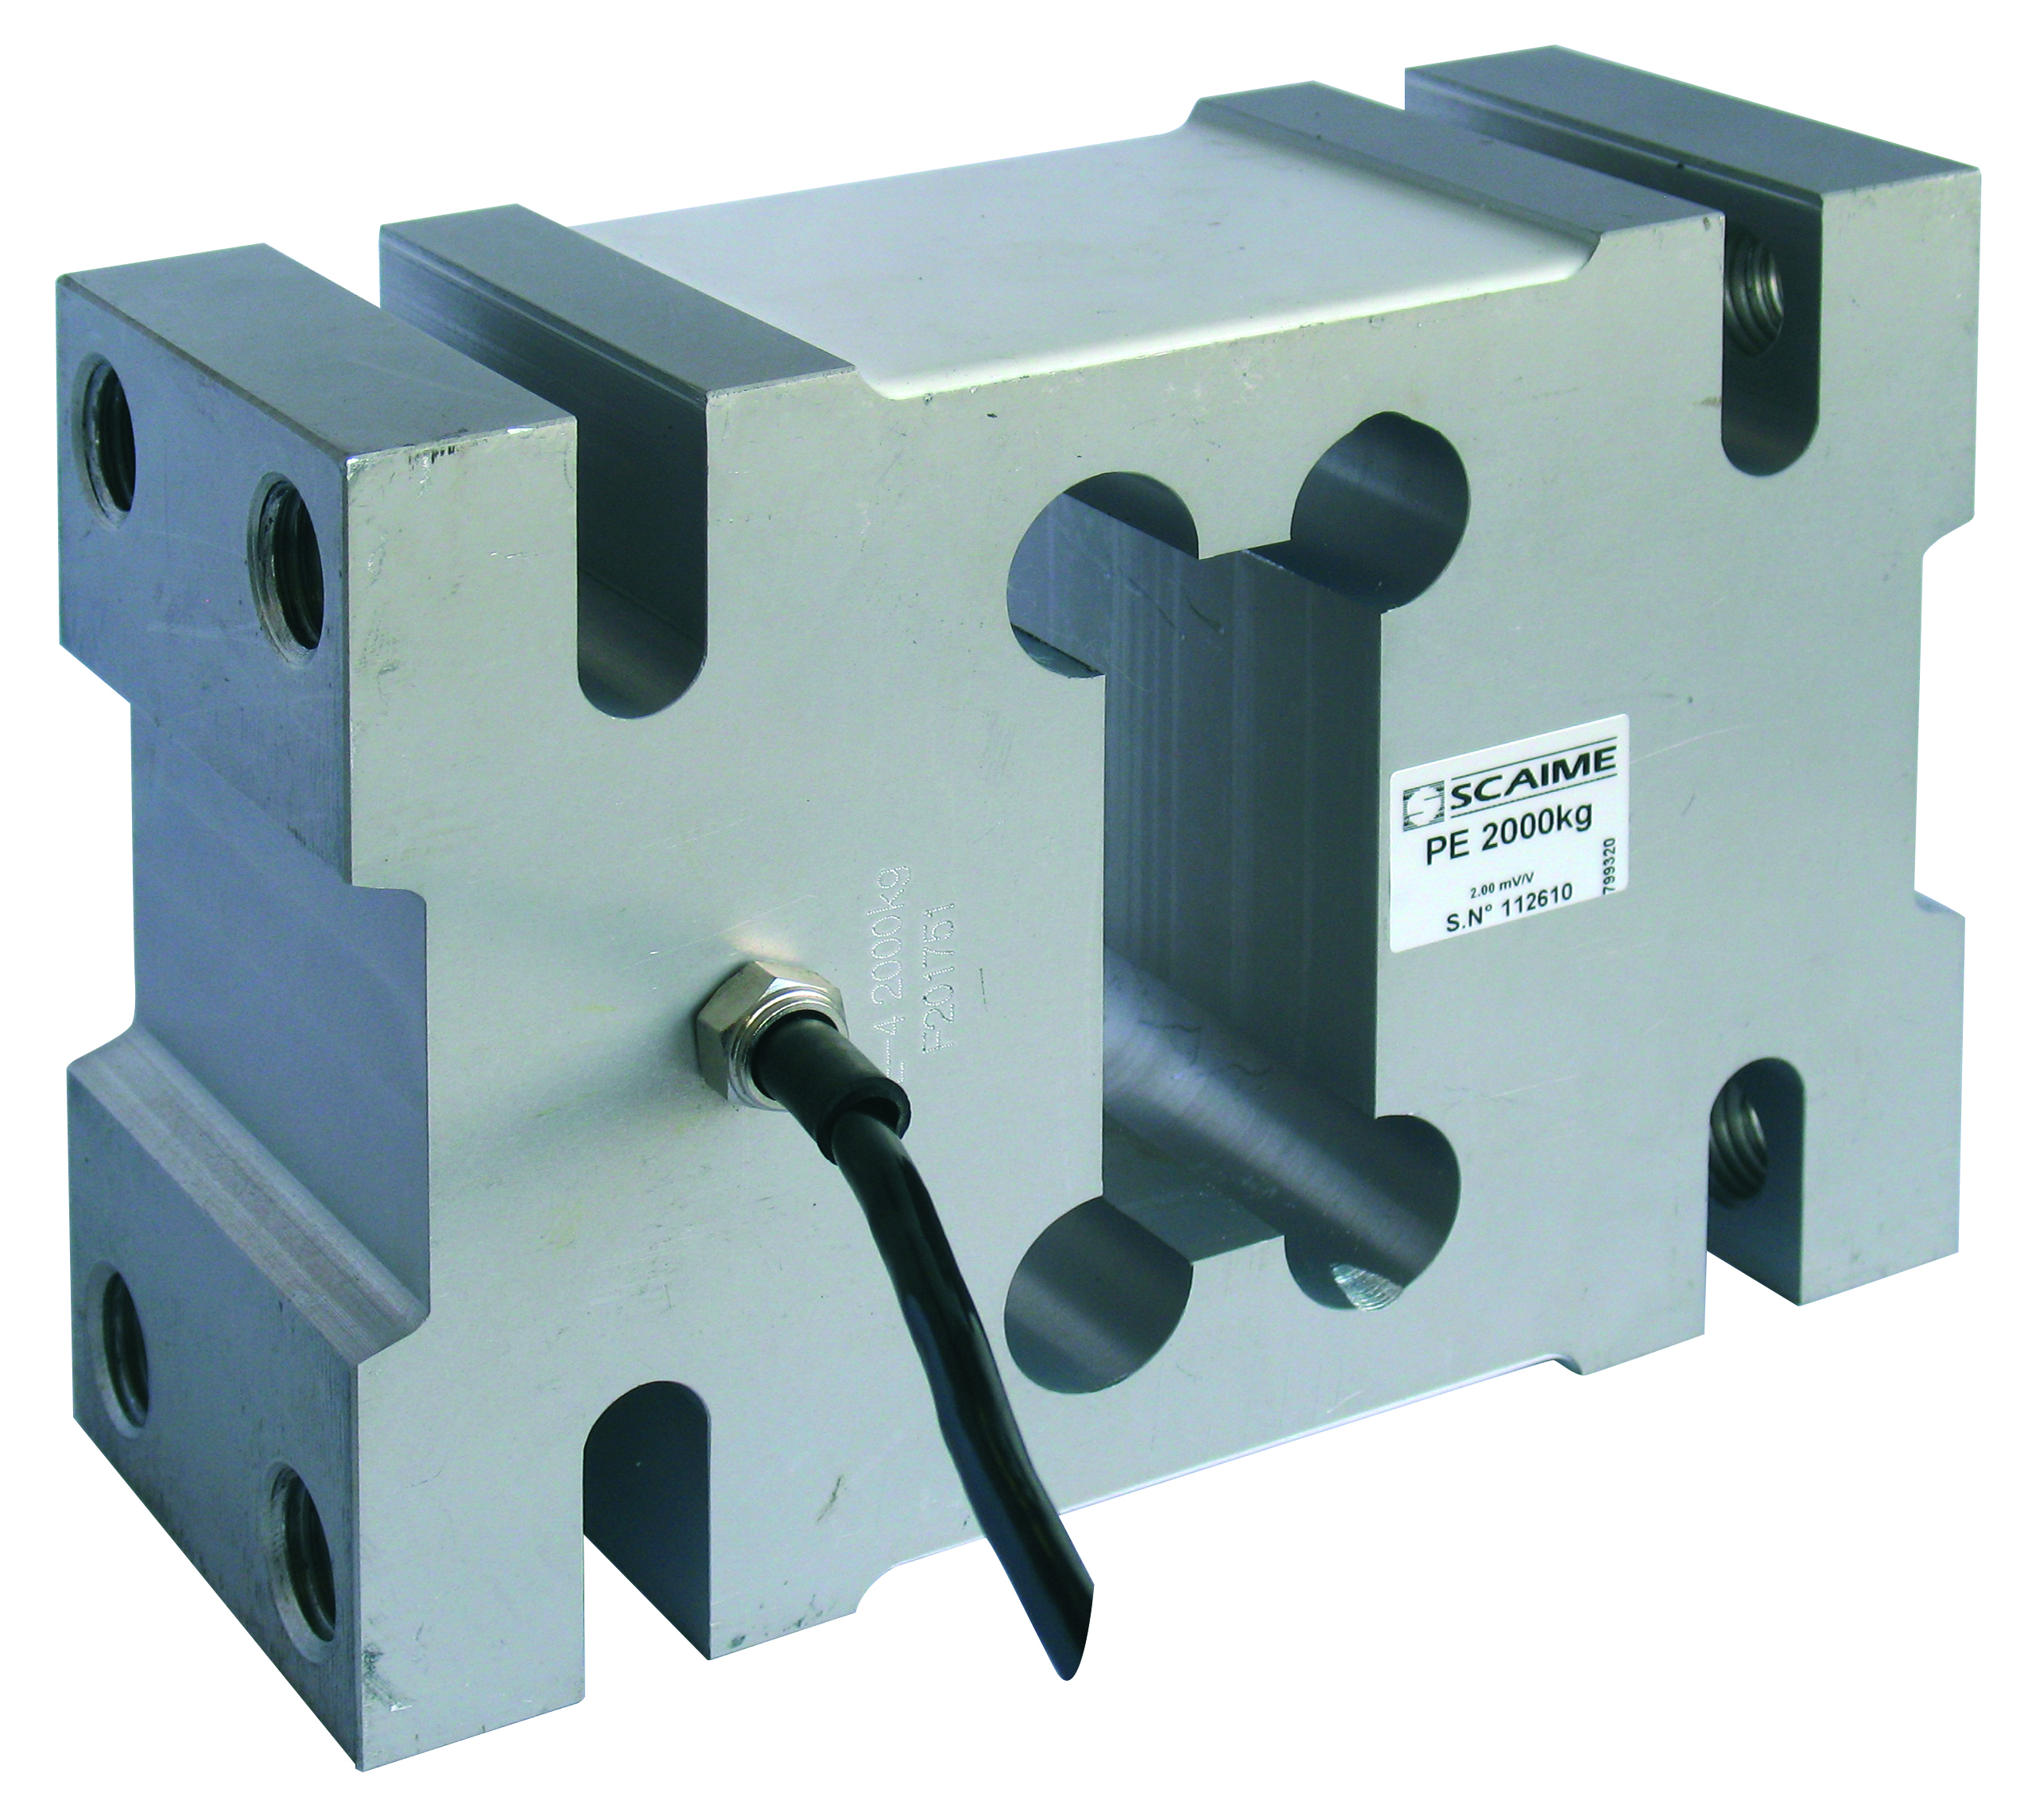 Одноточечные датчики из анодированного алюминия, номинал до 2000 кг, для платформ до 800 х 1000 мм и подвесных бункеров, IP67